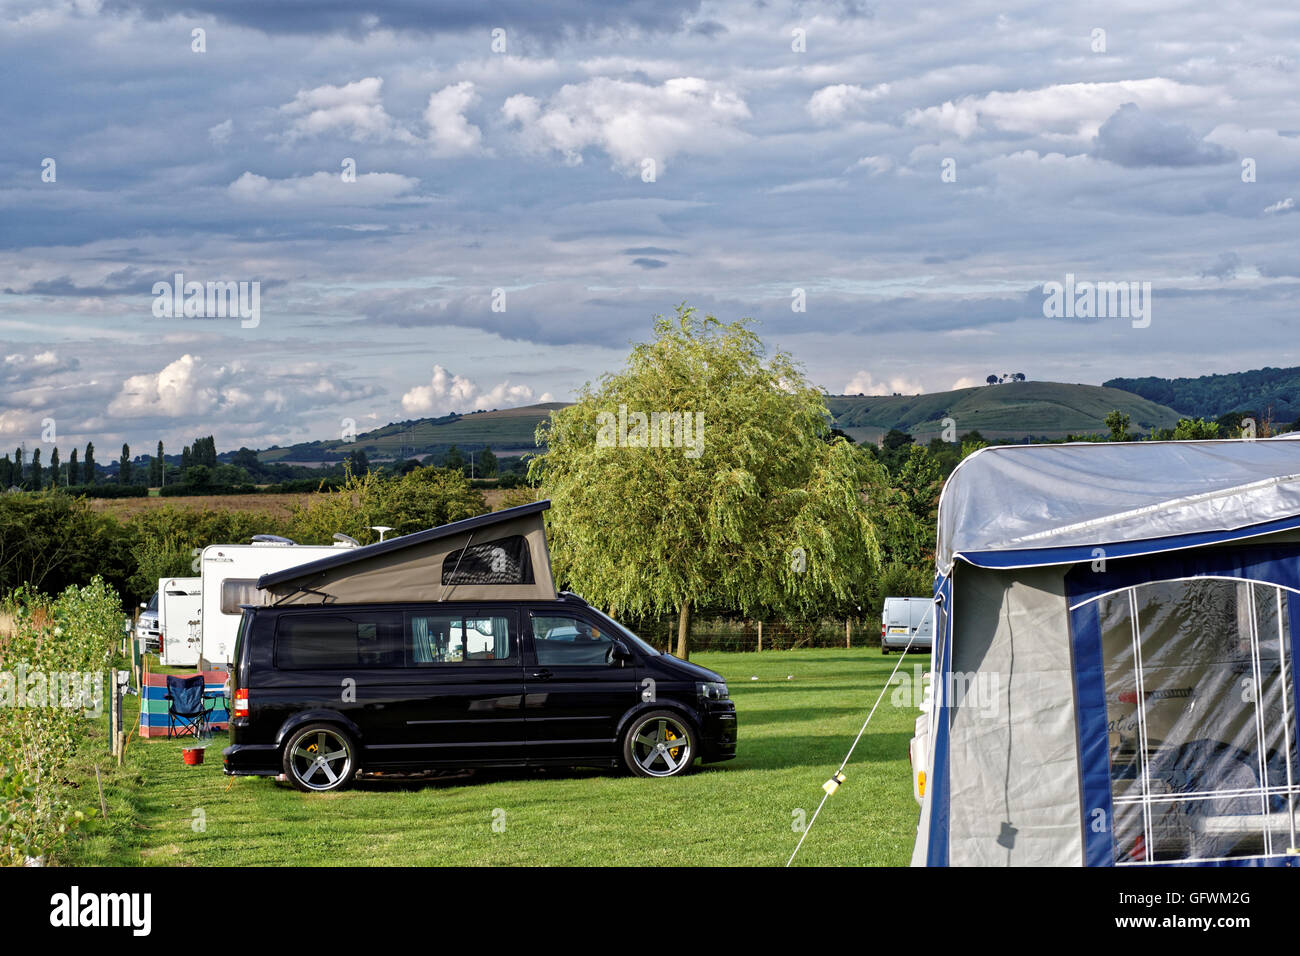 Volkswagen campervan on campsite Stock Photo